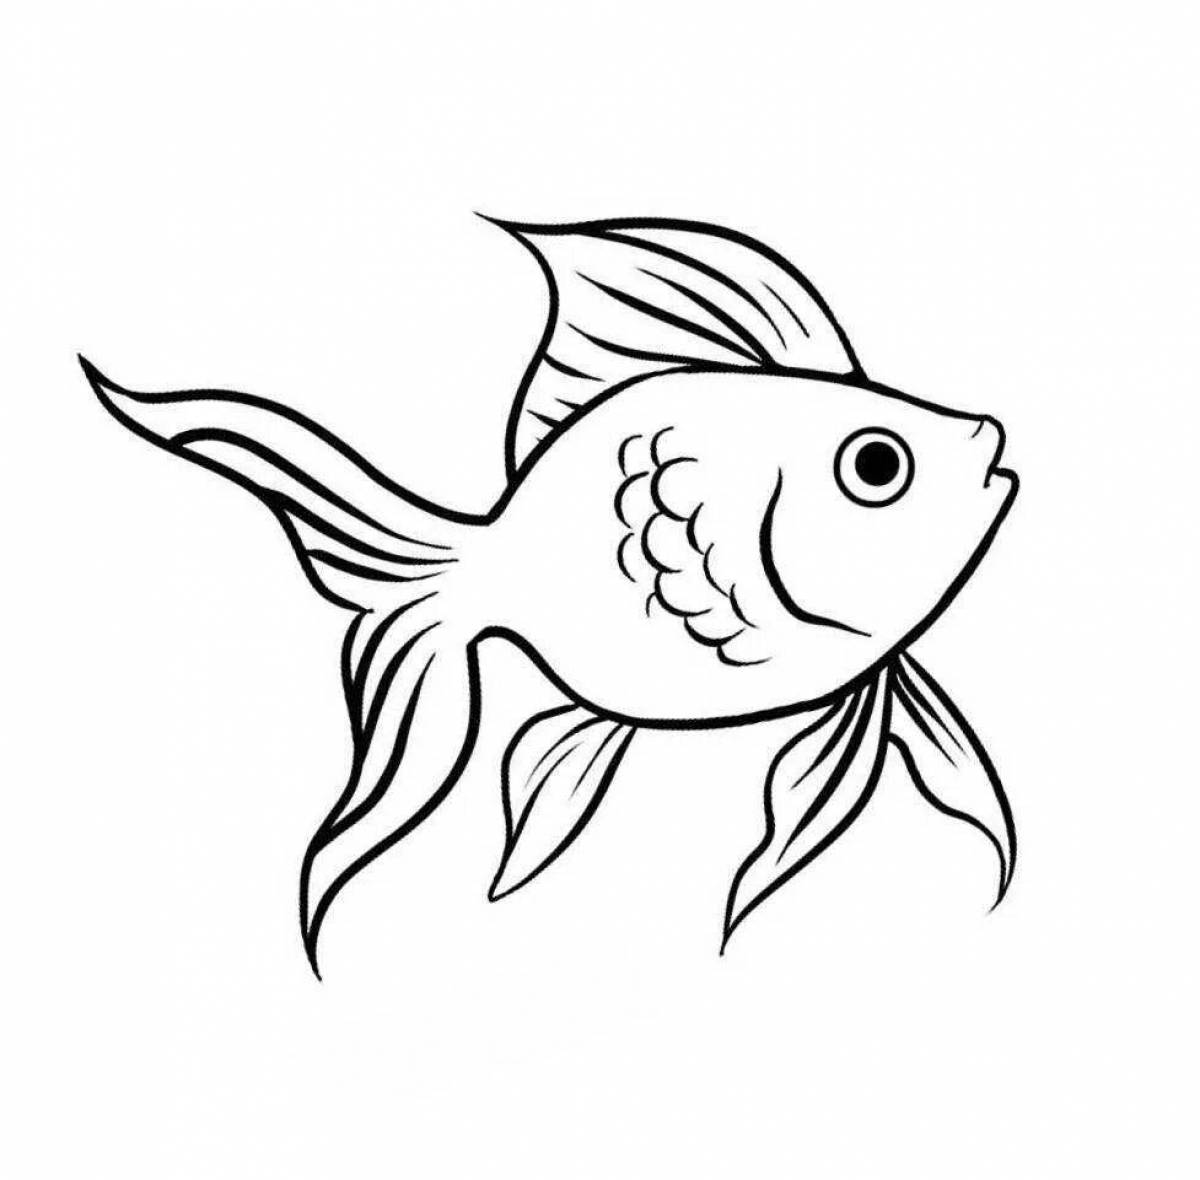 Детальный рисунок золотой рыбки